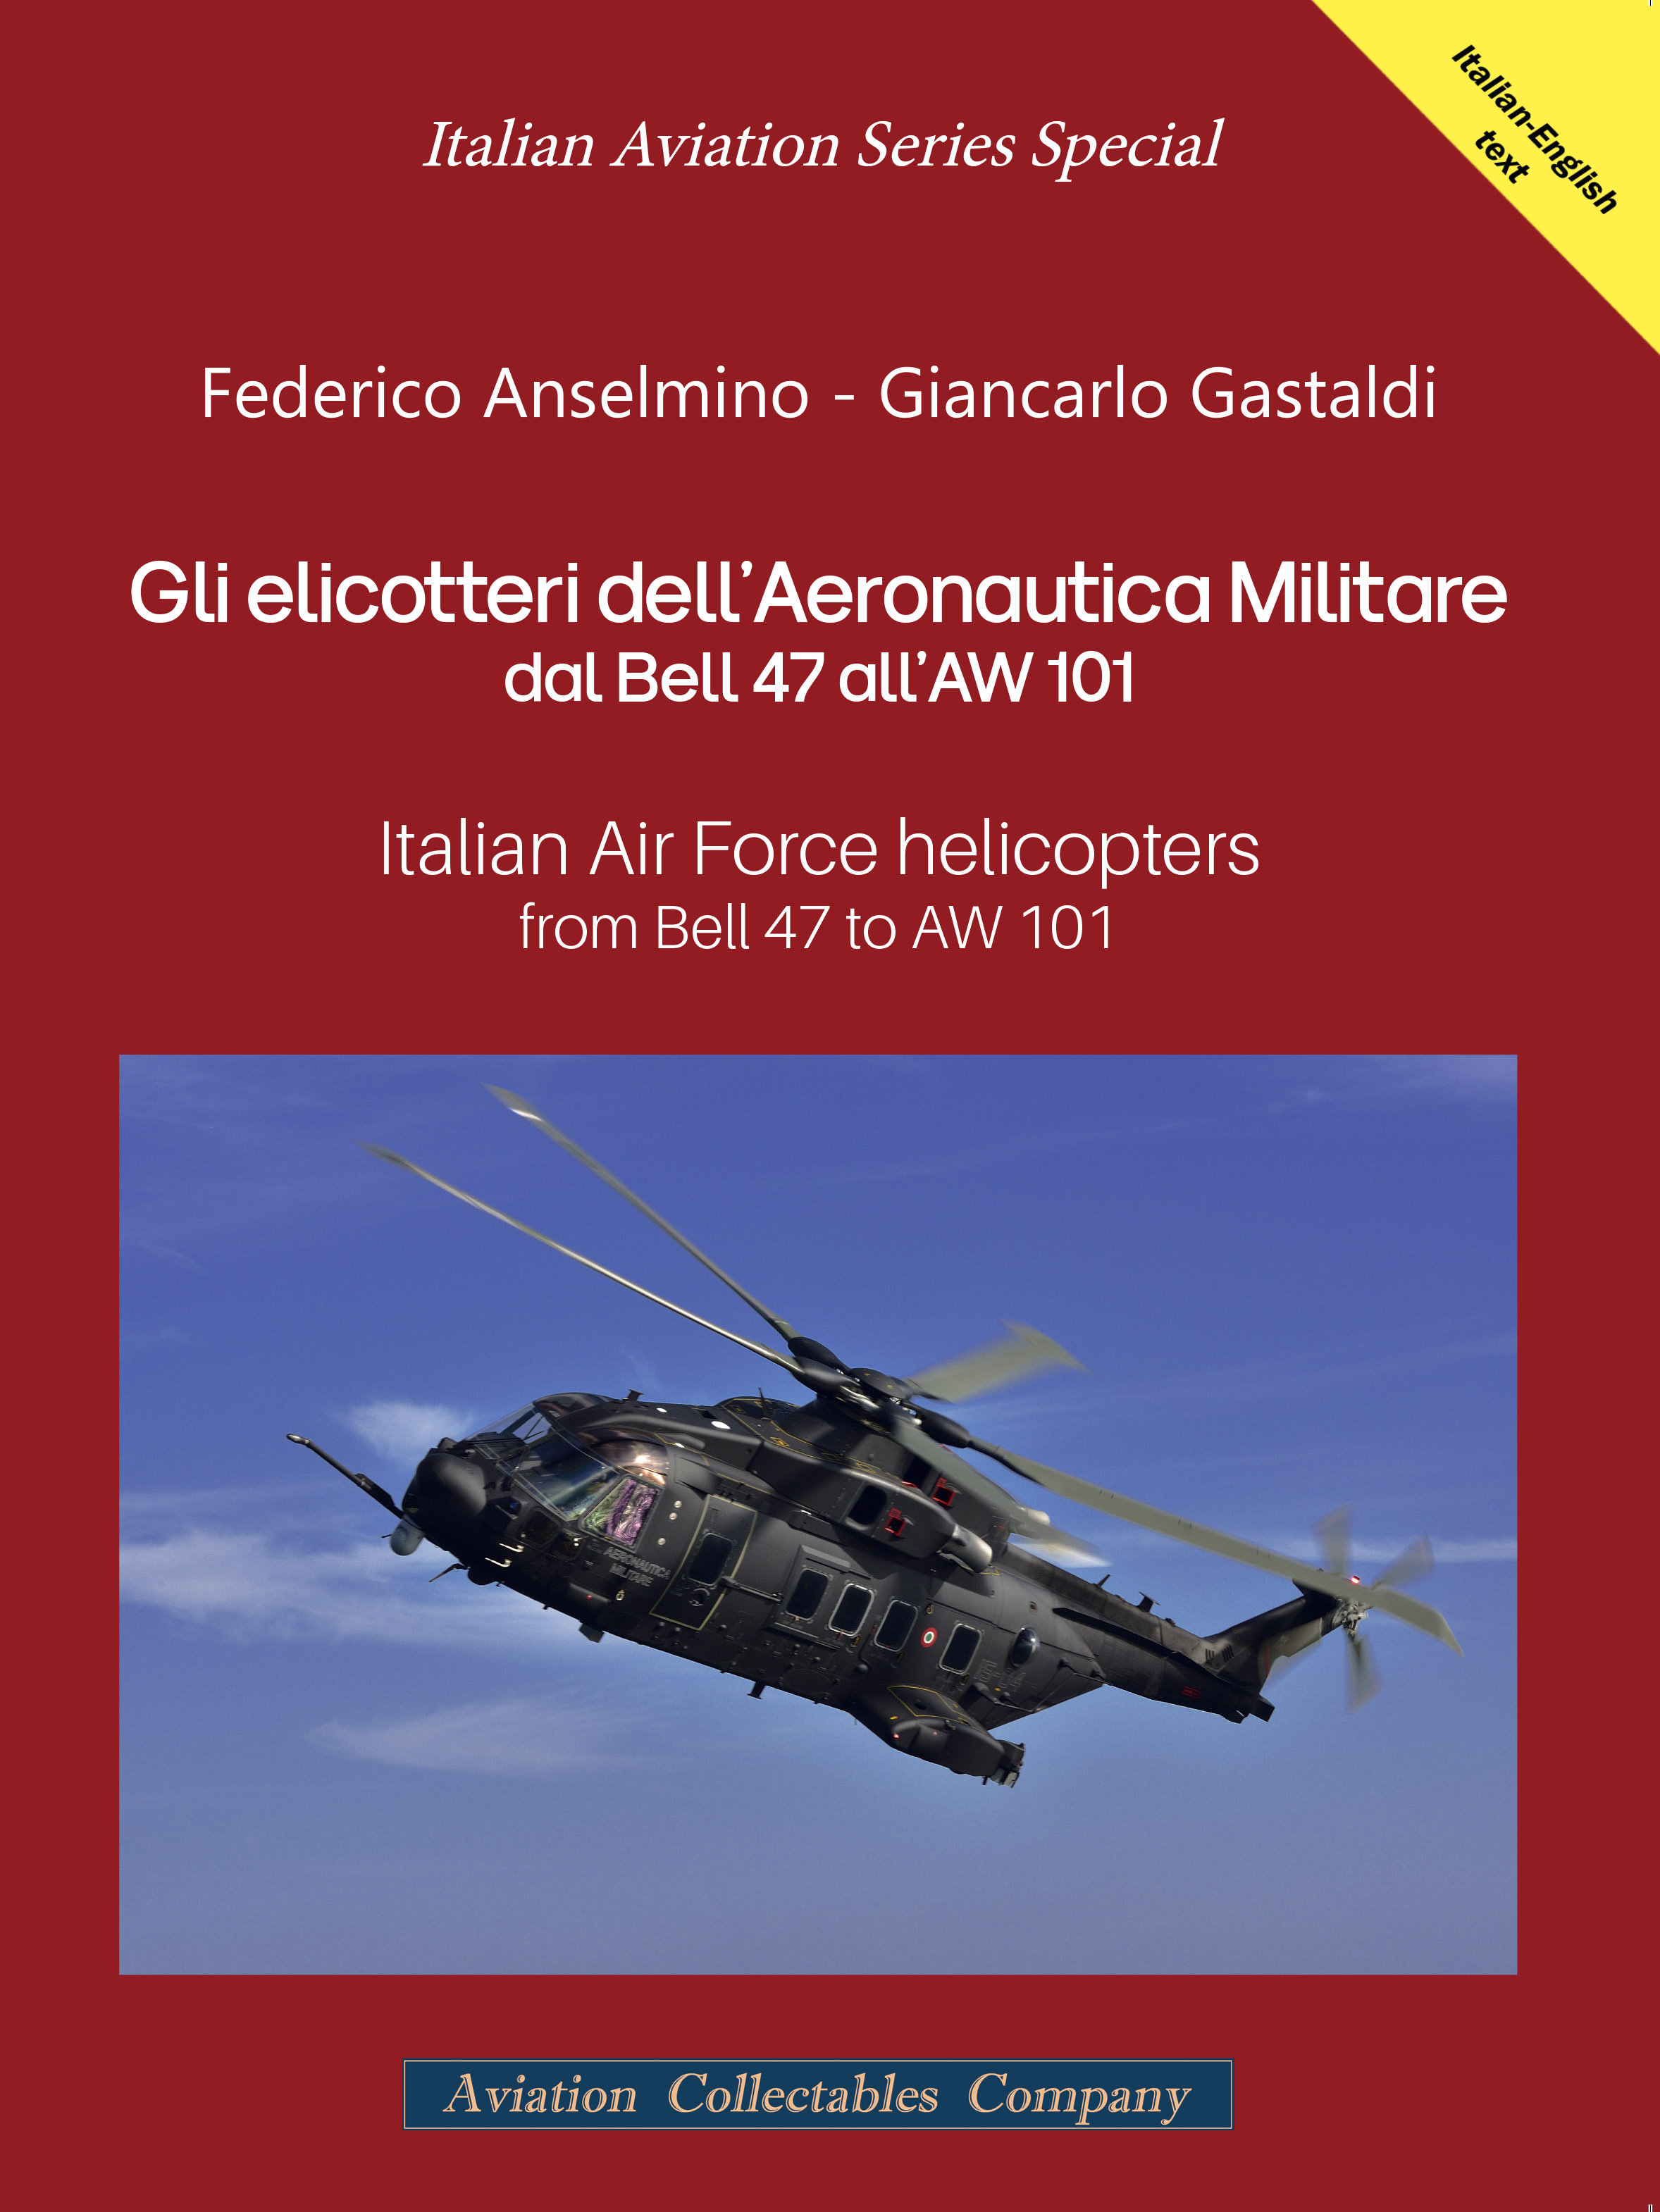 Il nuovo special della collana Italian Aviation Series